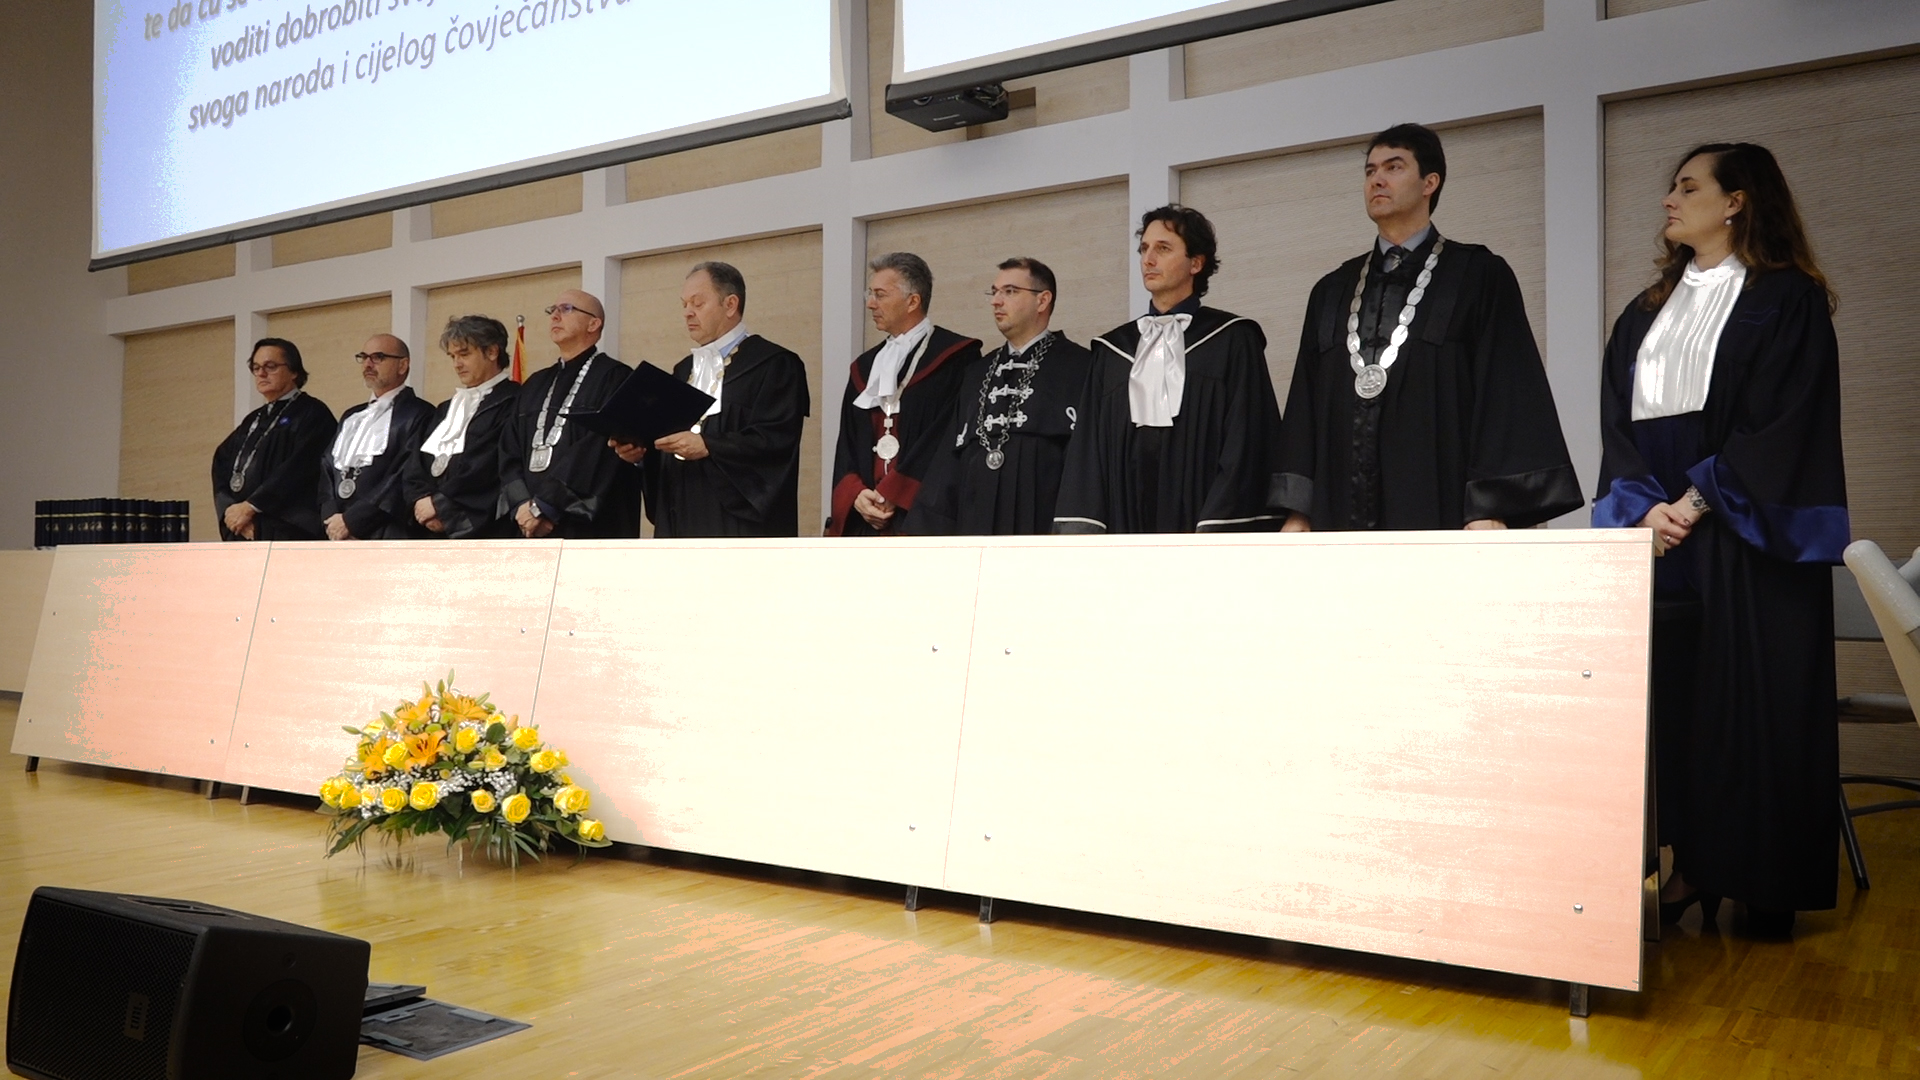 Svečana sjednica Fakultetskog vijeća povodom 20. godišnjice Medicinskoga fakulteta u Splitu